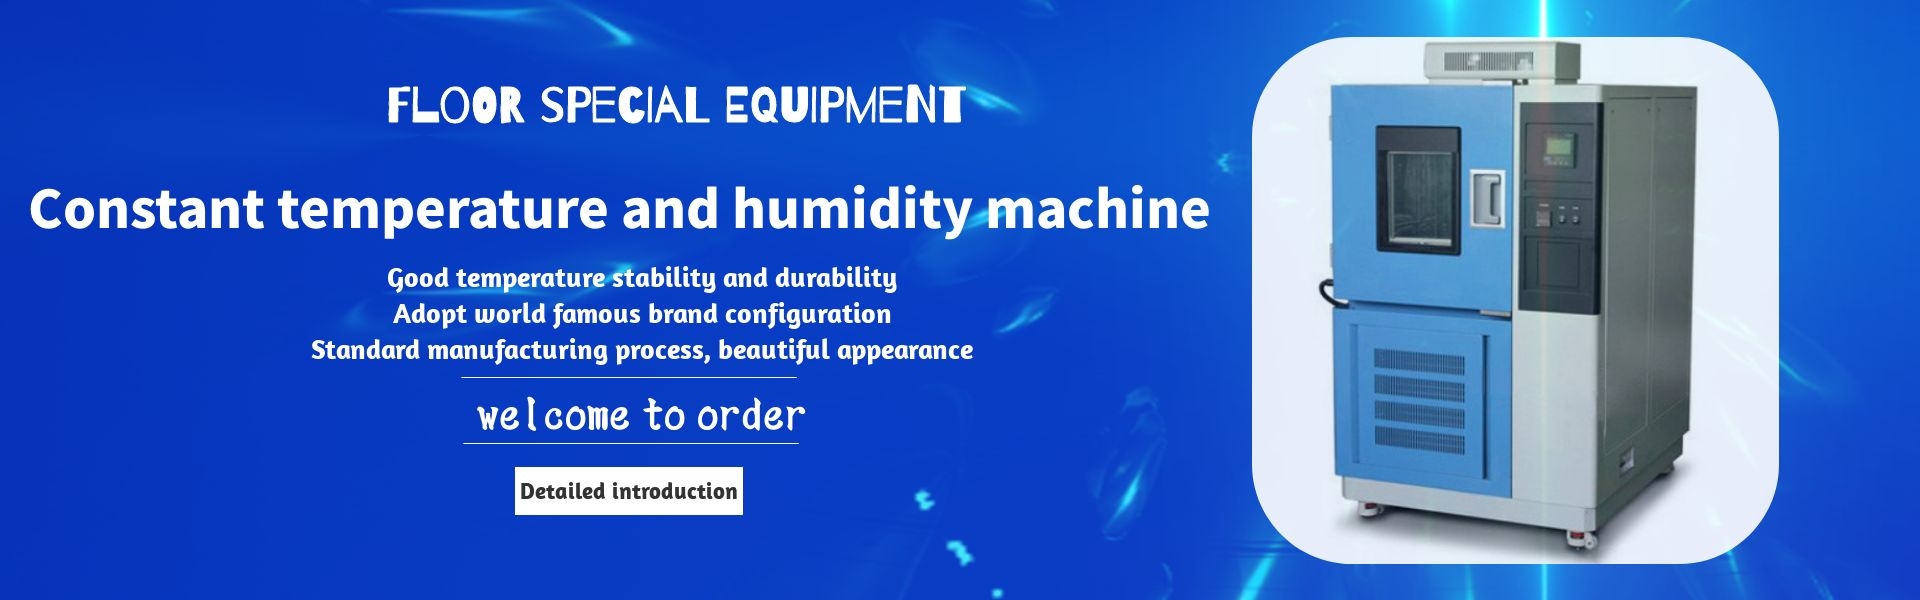 máy kiểm tra sàn, buồng độ ẩm, máy kiểm tra lão hóa,Dongguan Runzhi Electronics Co., Ltd.